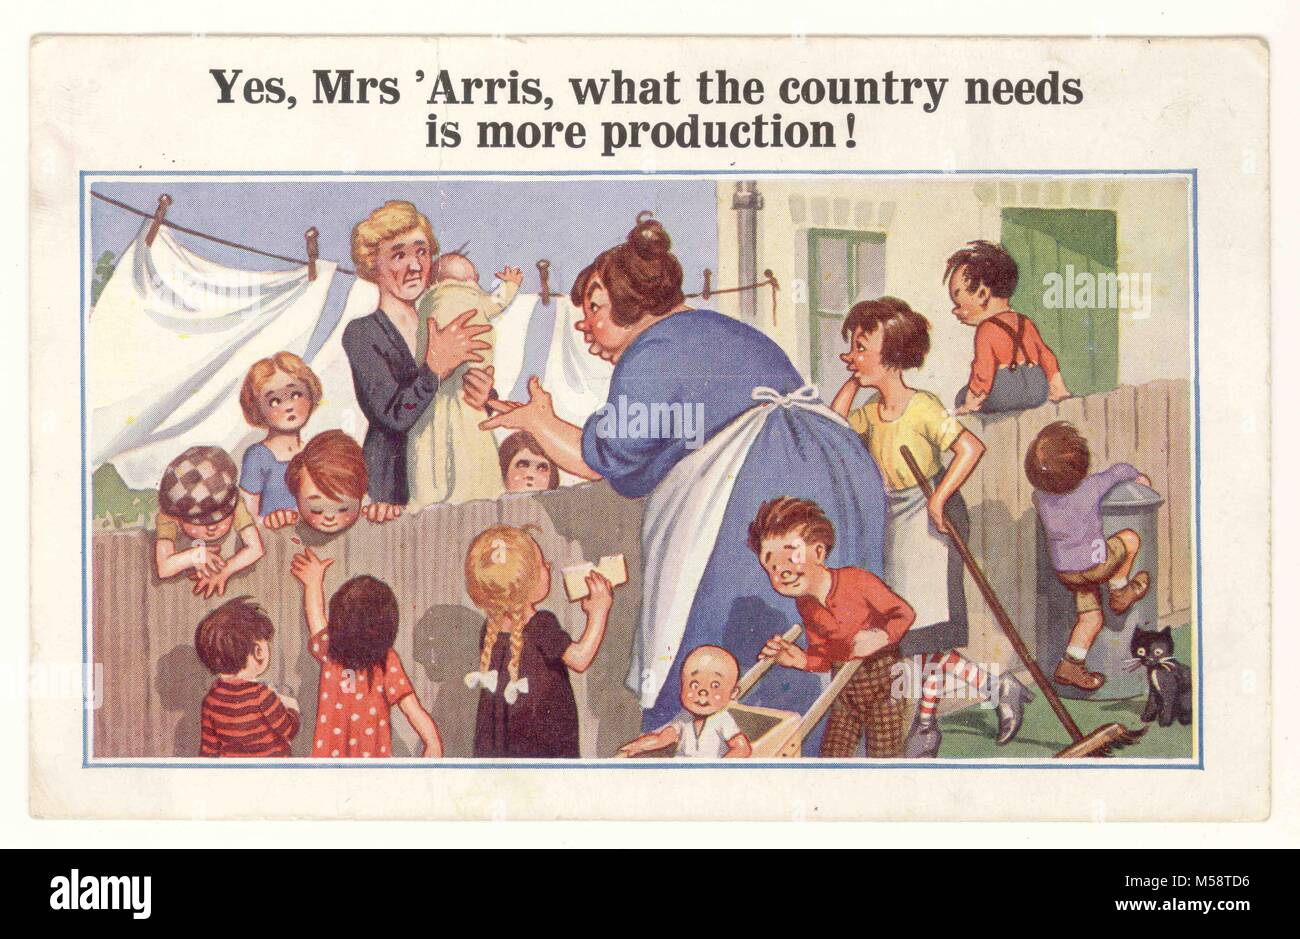 Carte postale comique de l'ère WW2 -' ce dont le pays a besoin est plus de production' imprimée à Londres, probablement en réponse à la propagande gouvernementale exhortant le pays à produire plus sur le front intérieur, vers 1939, Royaume-Uni Banque D'Images